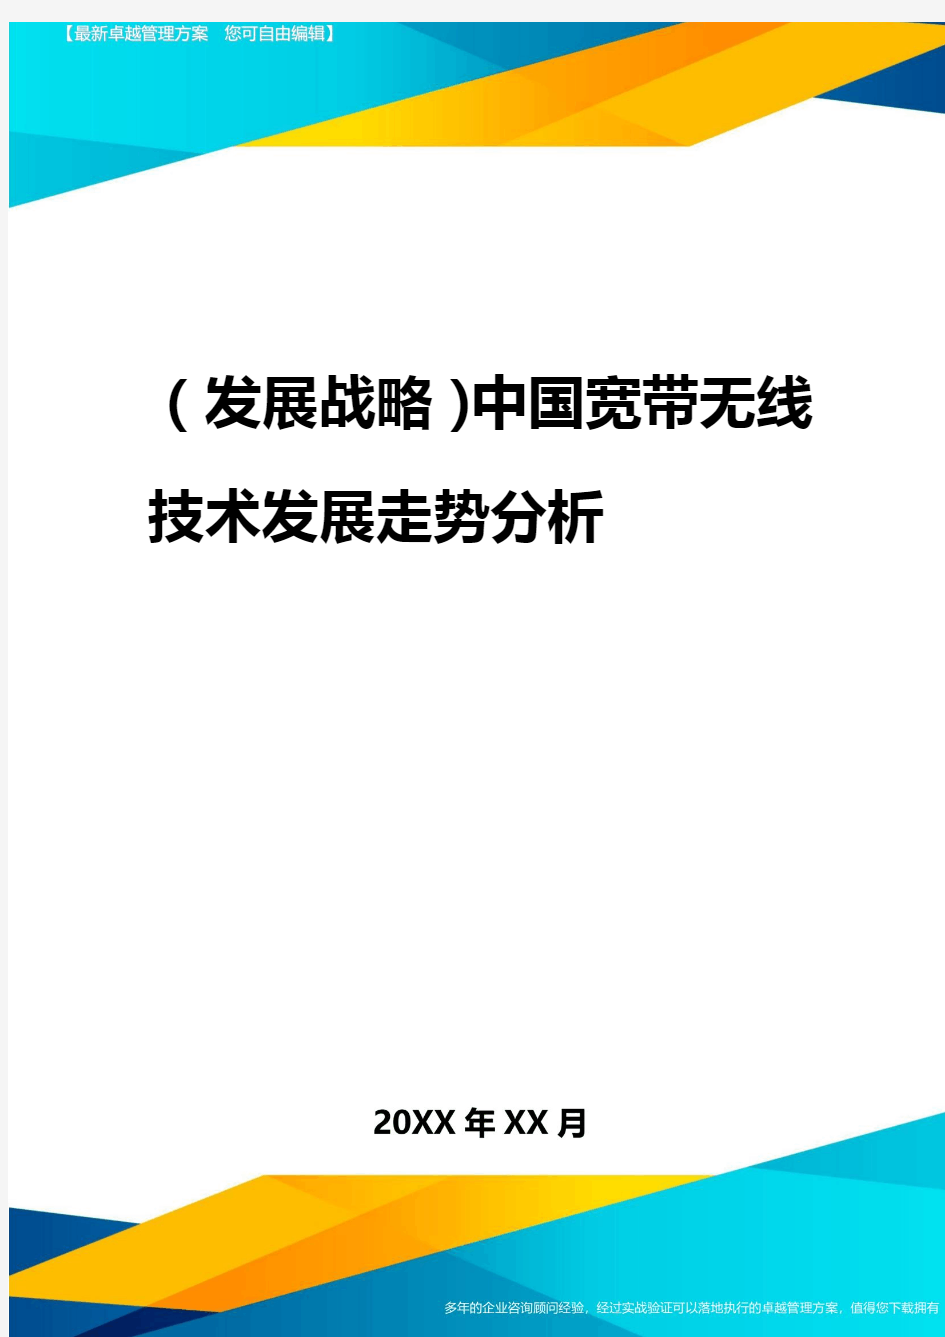 2020年(发展战略)中国宽带无线技术发展走势分析